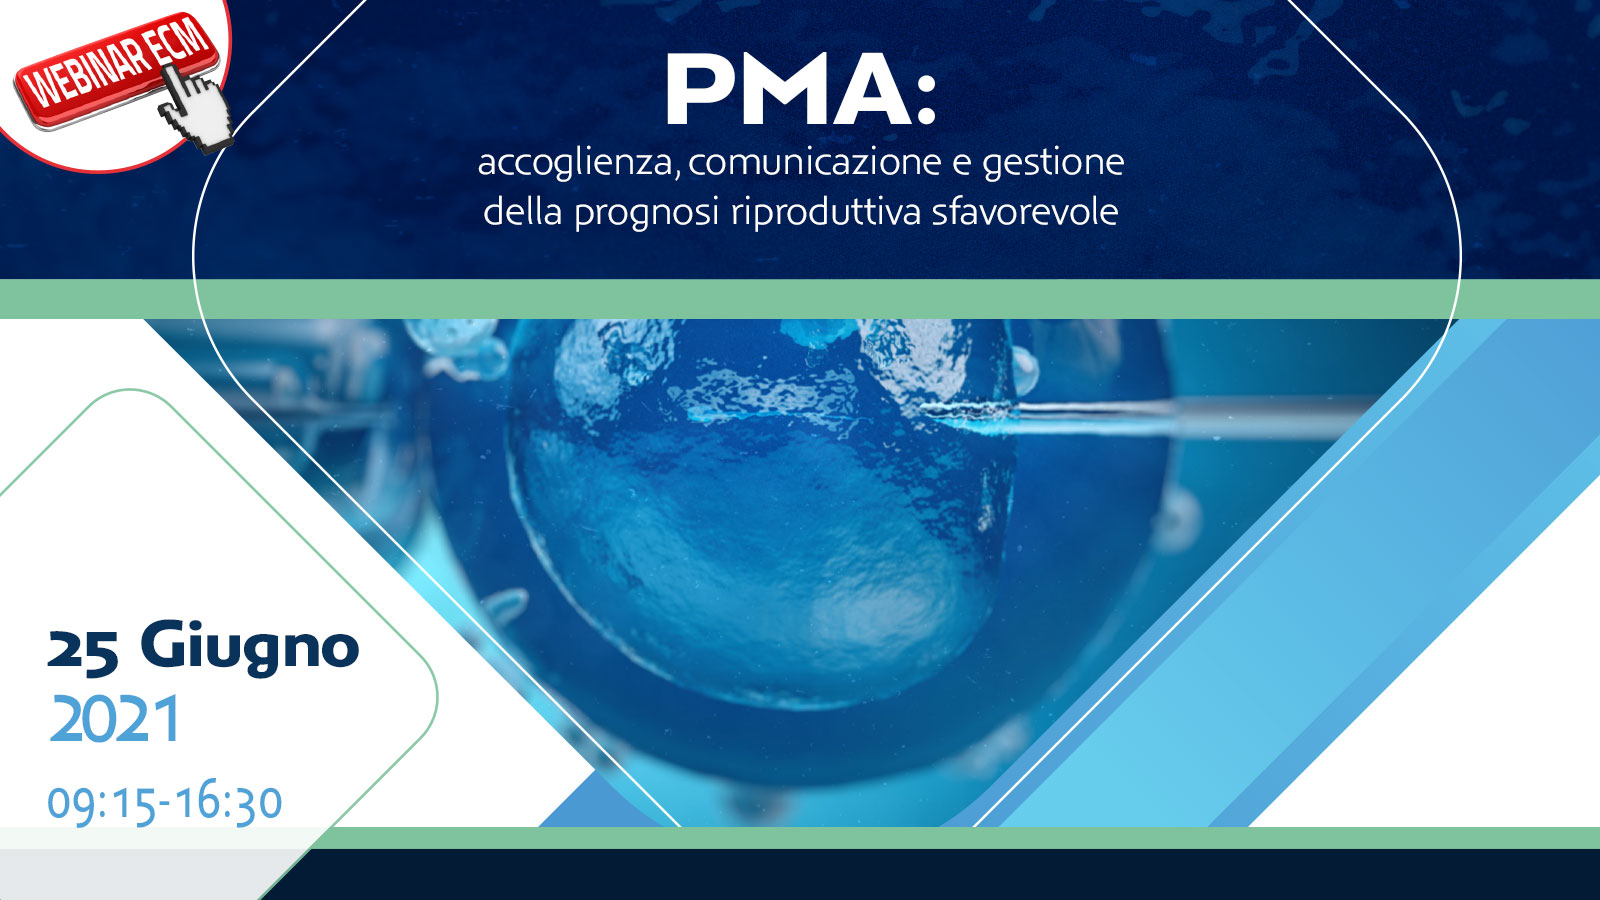 PMA: accoglienza, comunicazione e gestione della prognosi riproduttiva sfavorevole